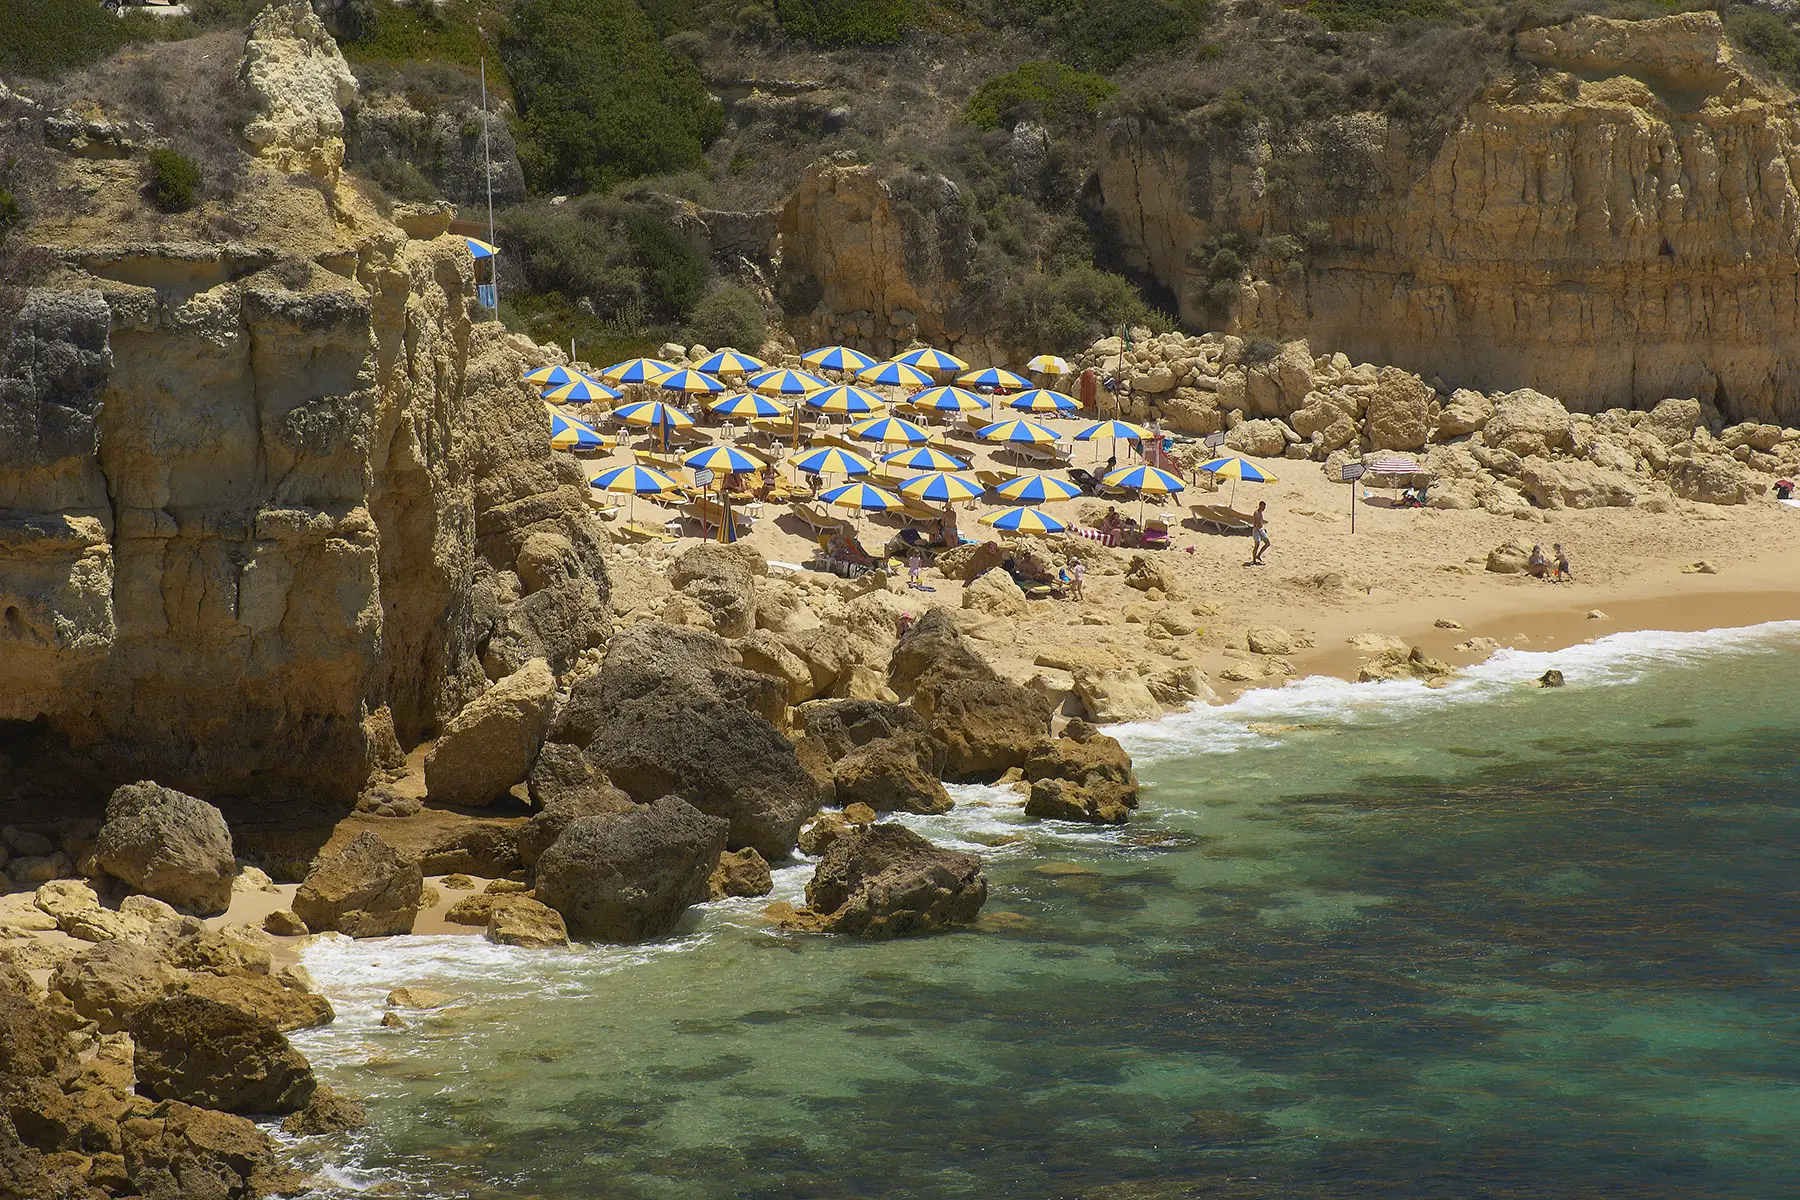 Praia do Castelo, a beach in the Algarve region of Portugal